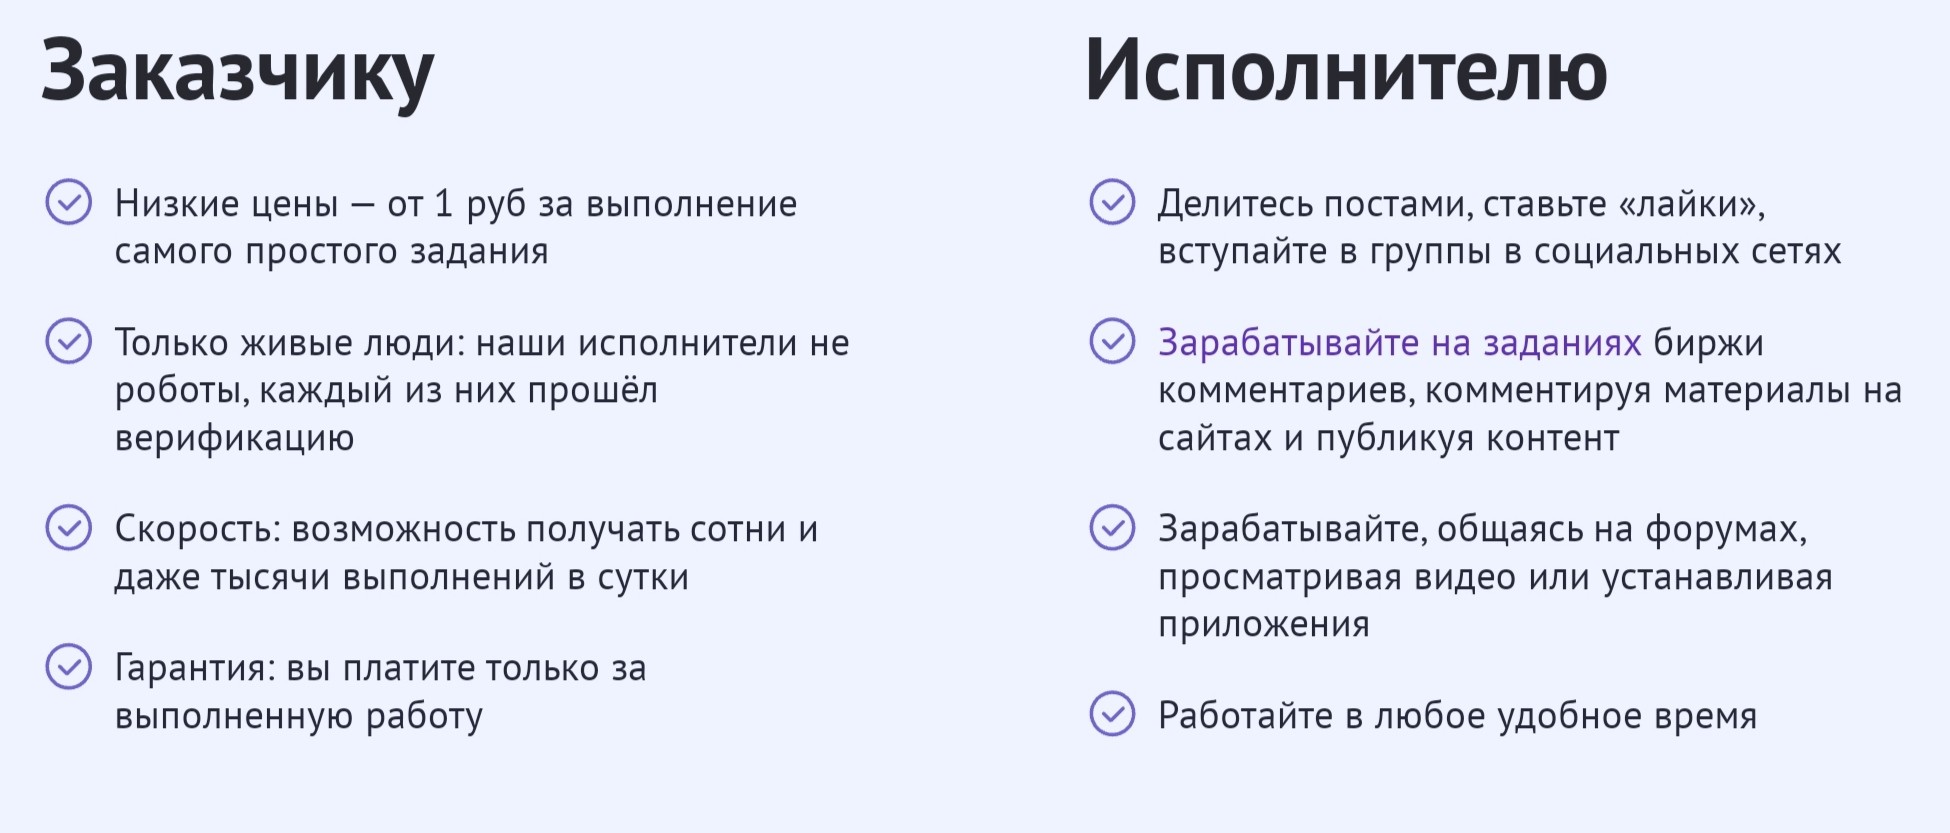 Обзор сайта Уну.ру